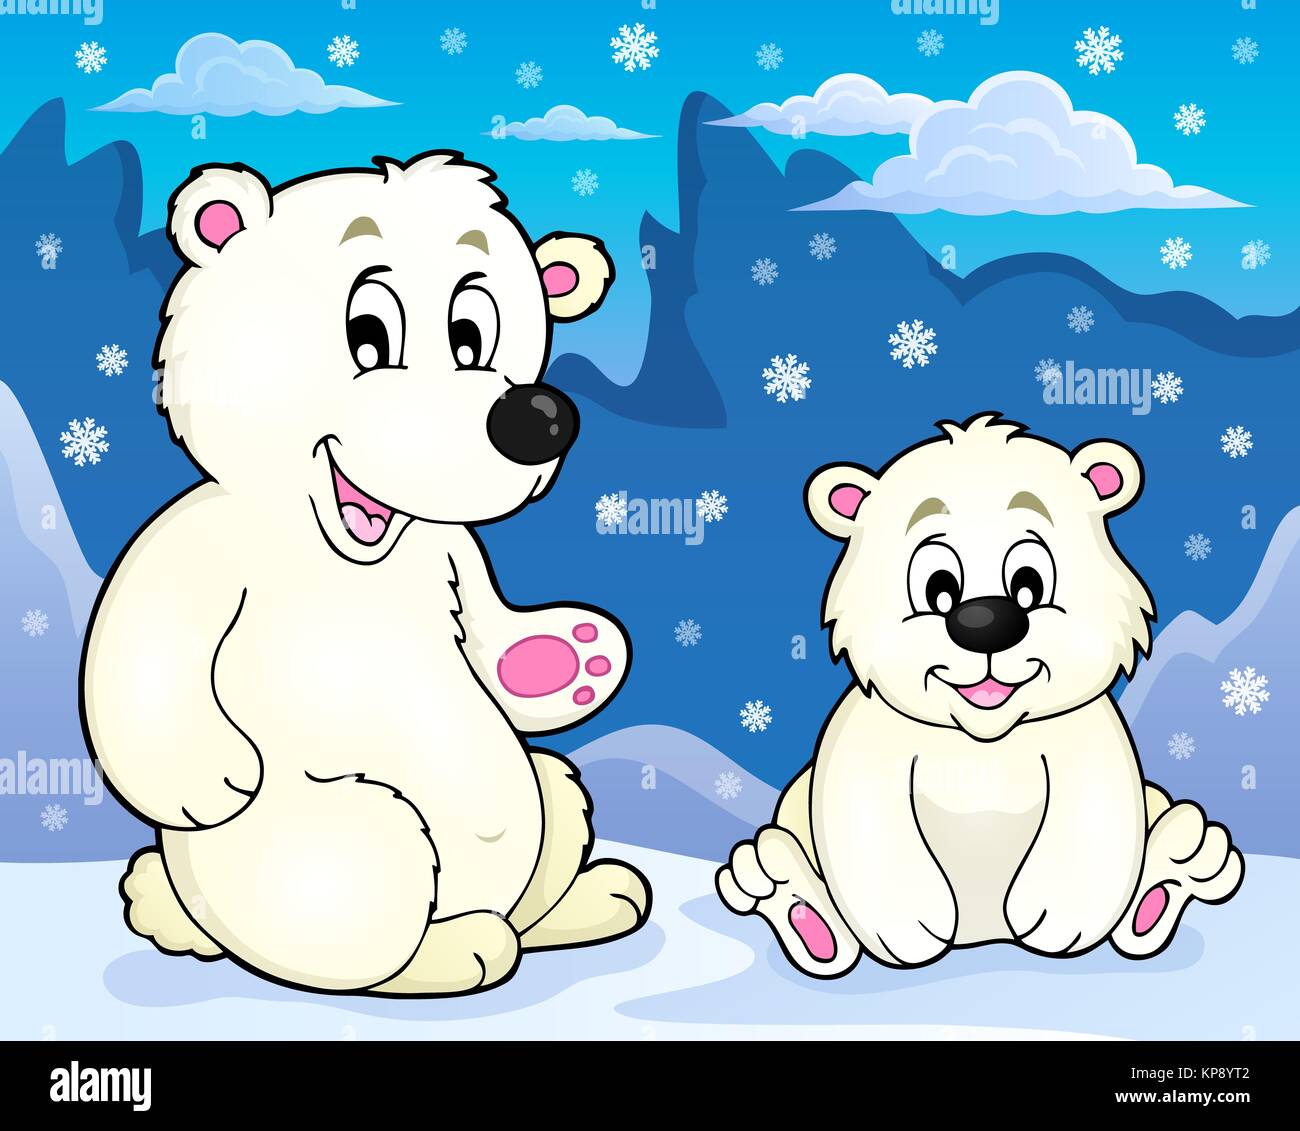 Les ours blancs de l'image thème 2 Banque D'Images